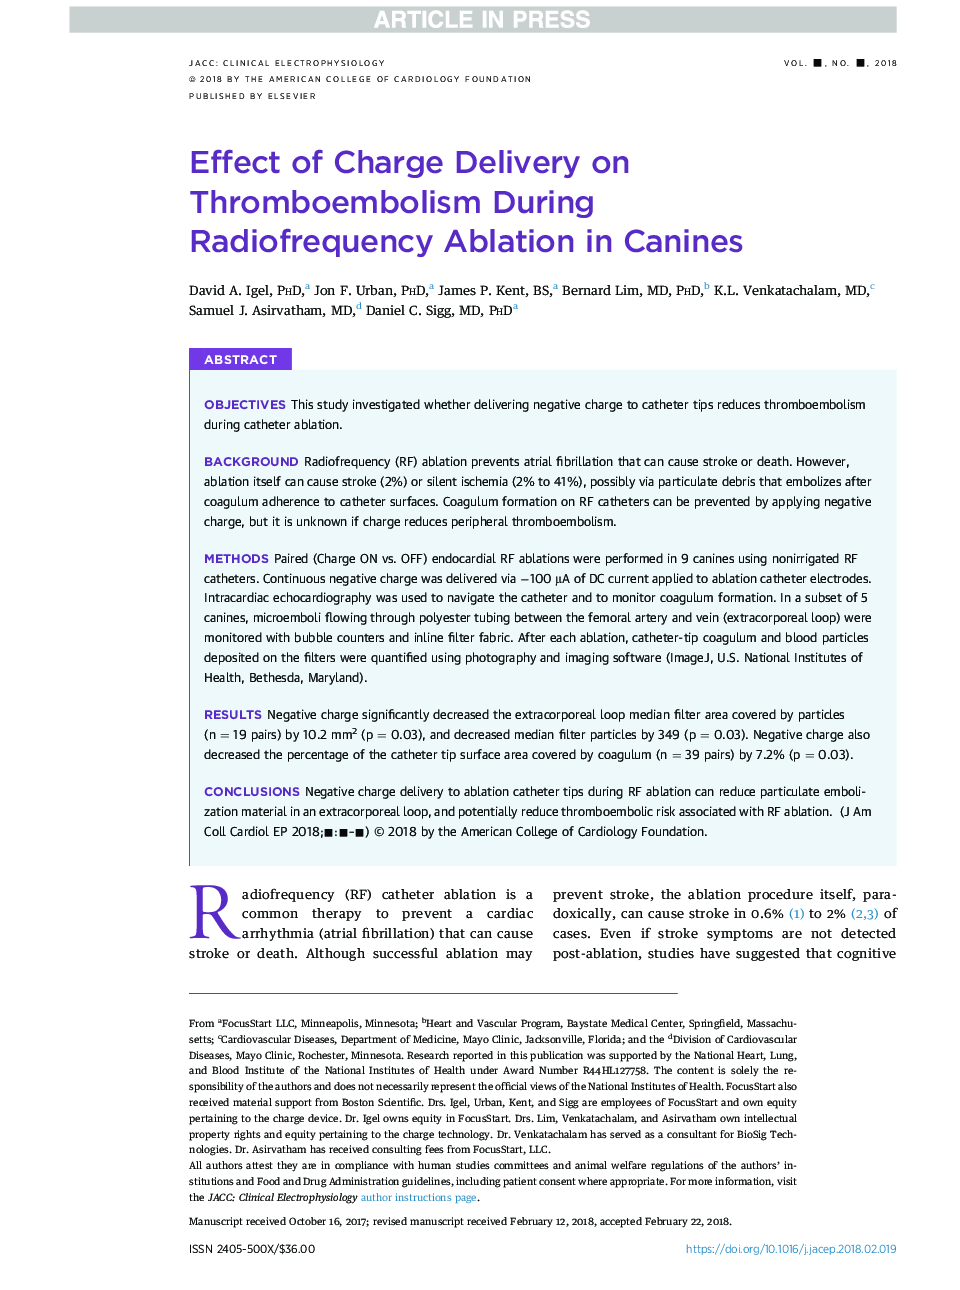 تأثیر تحمیل شارژ بر ترومبوآمبولی در حین ردیابی رادیوفرکانسی در سگها 